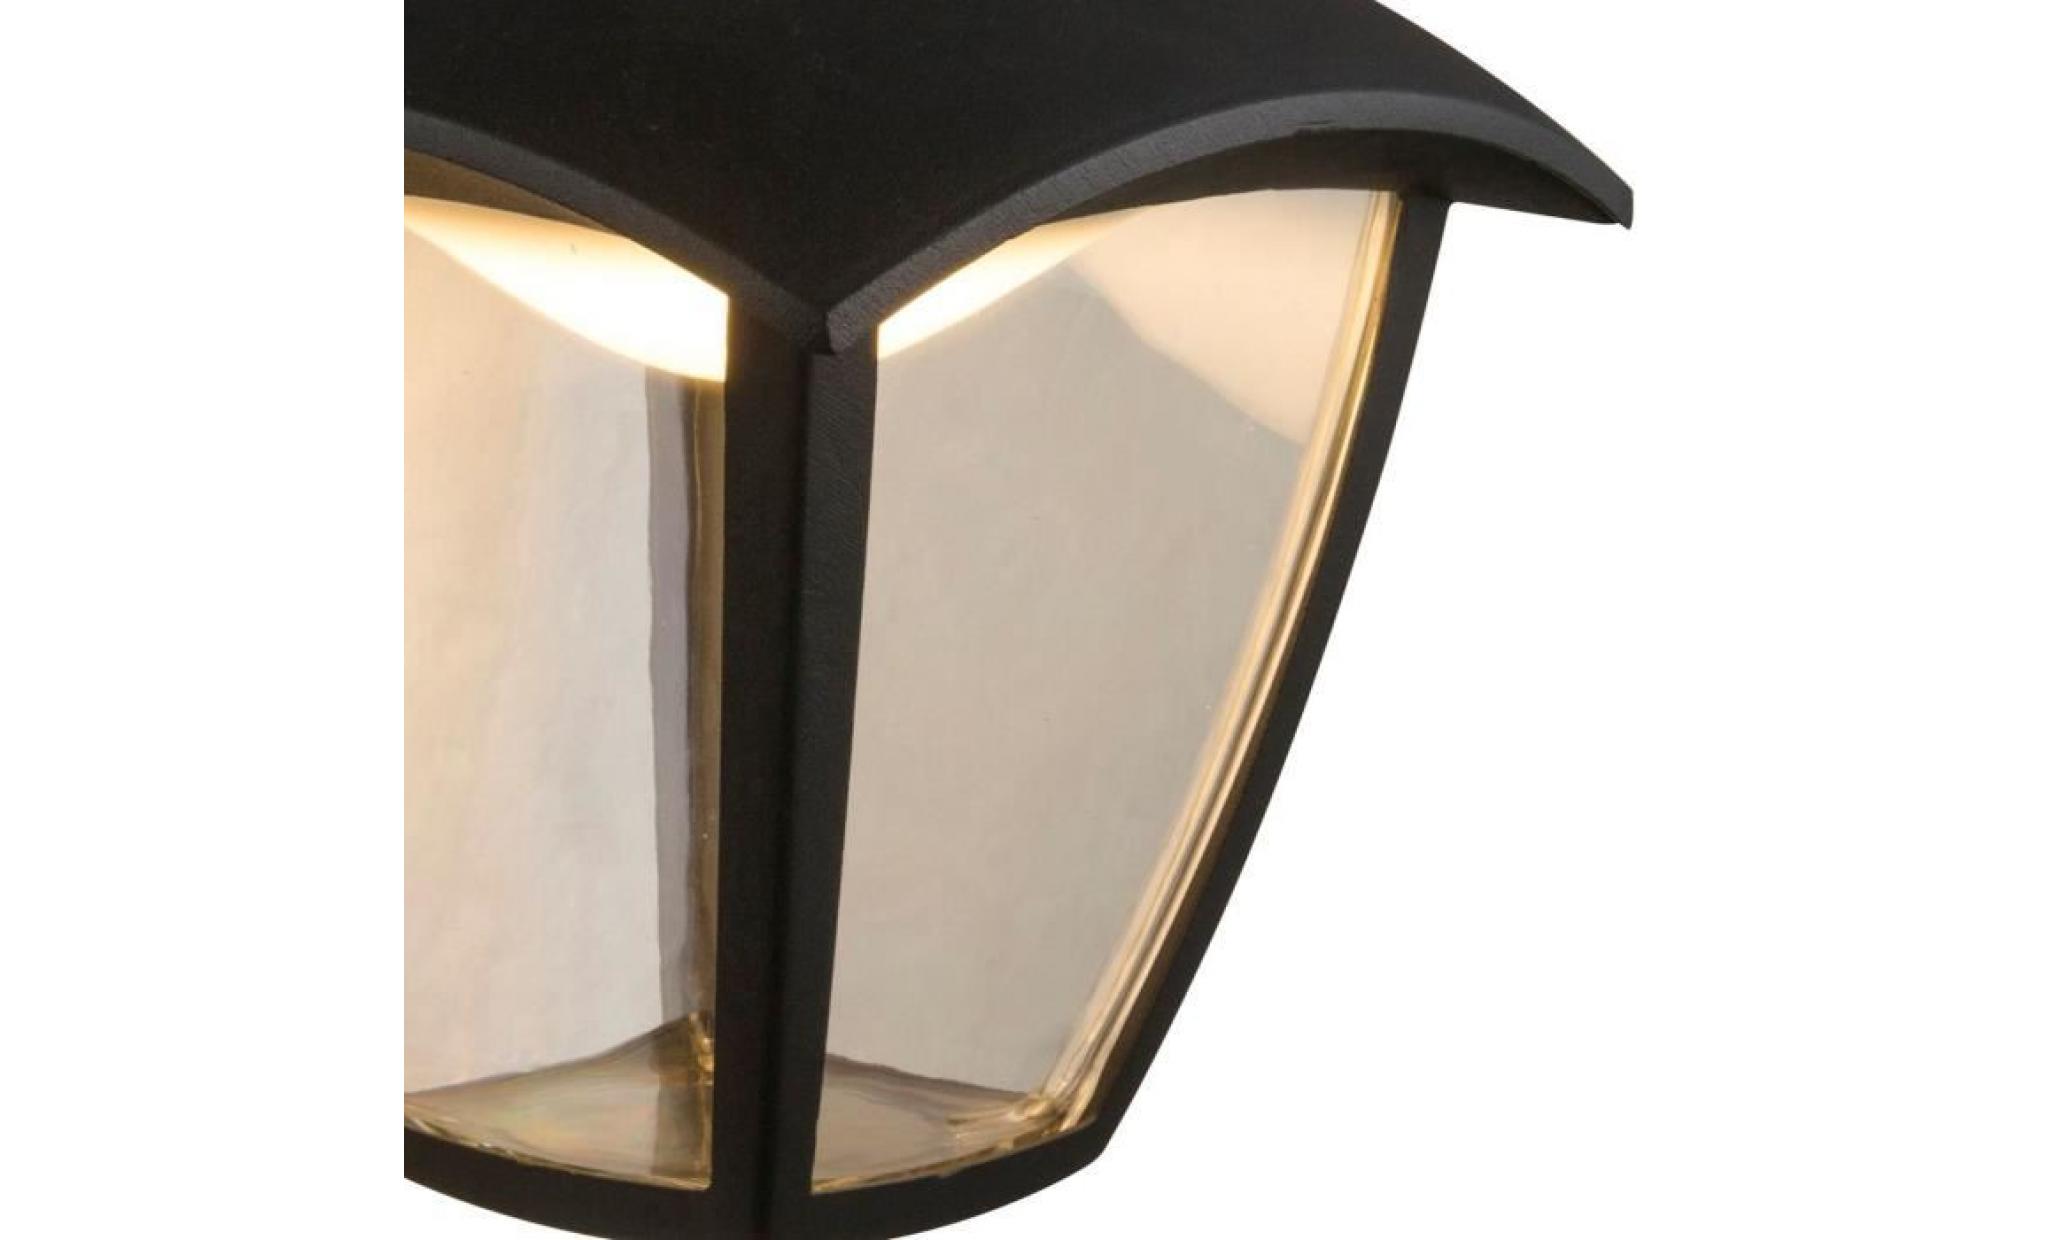 applique extérieur lanterne moderne led delio noire en aluminium kw170100 pas cher